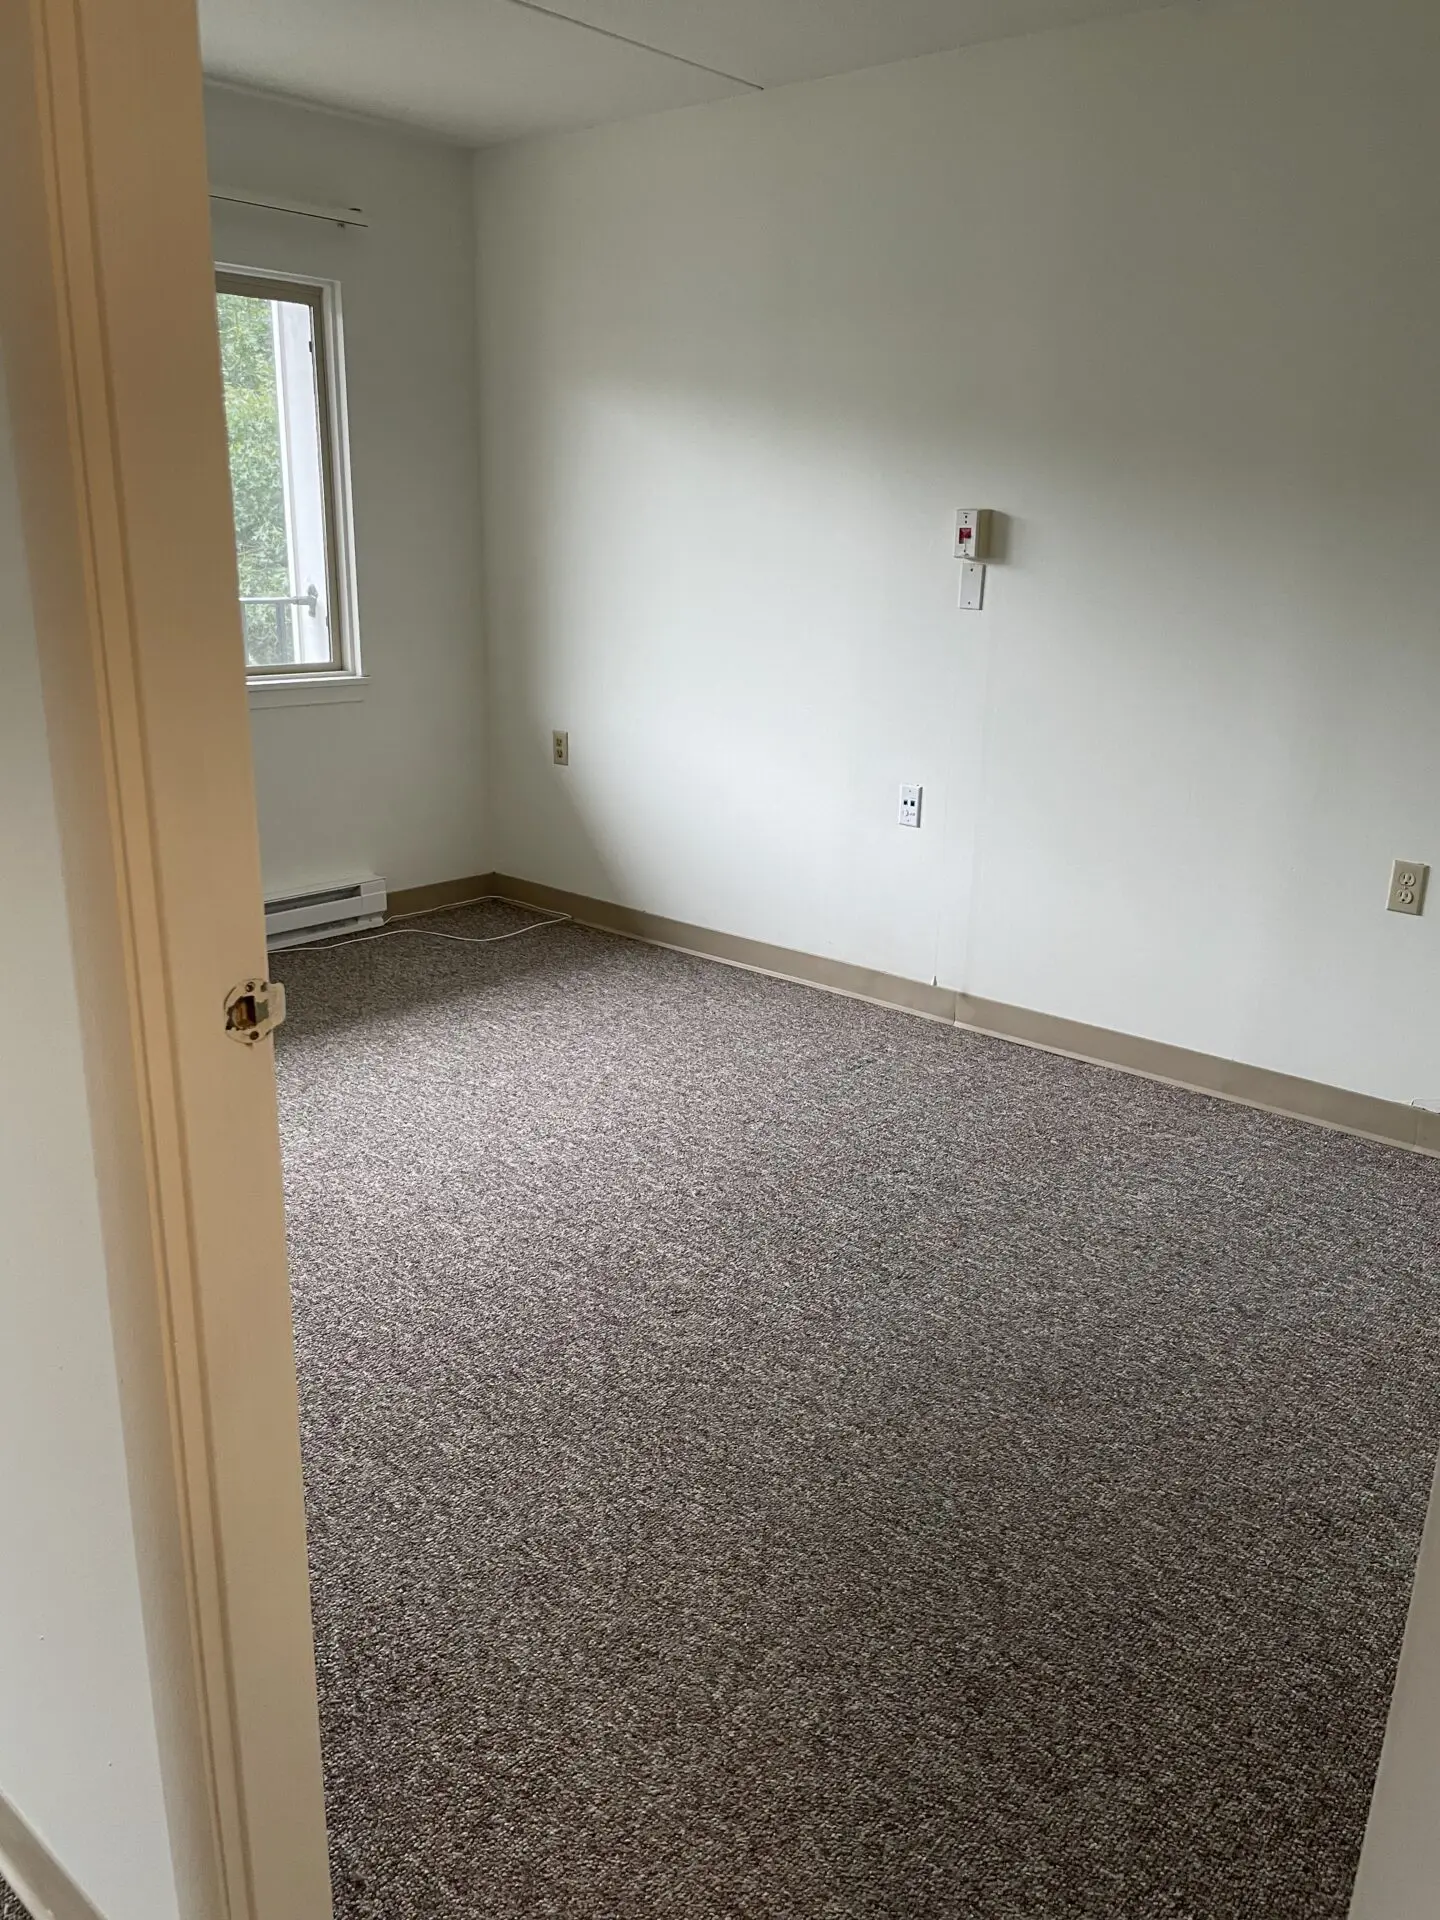 Pine Oak Apartments Interior Door and empty room